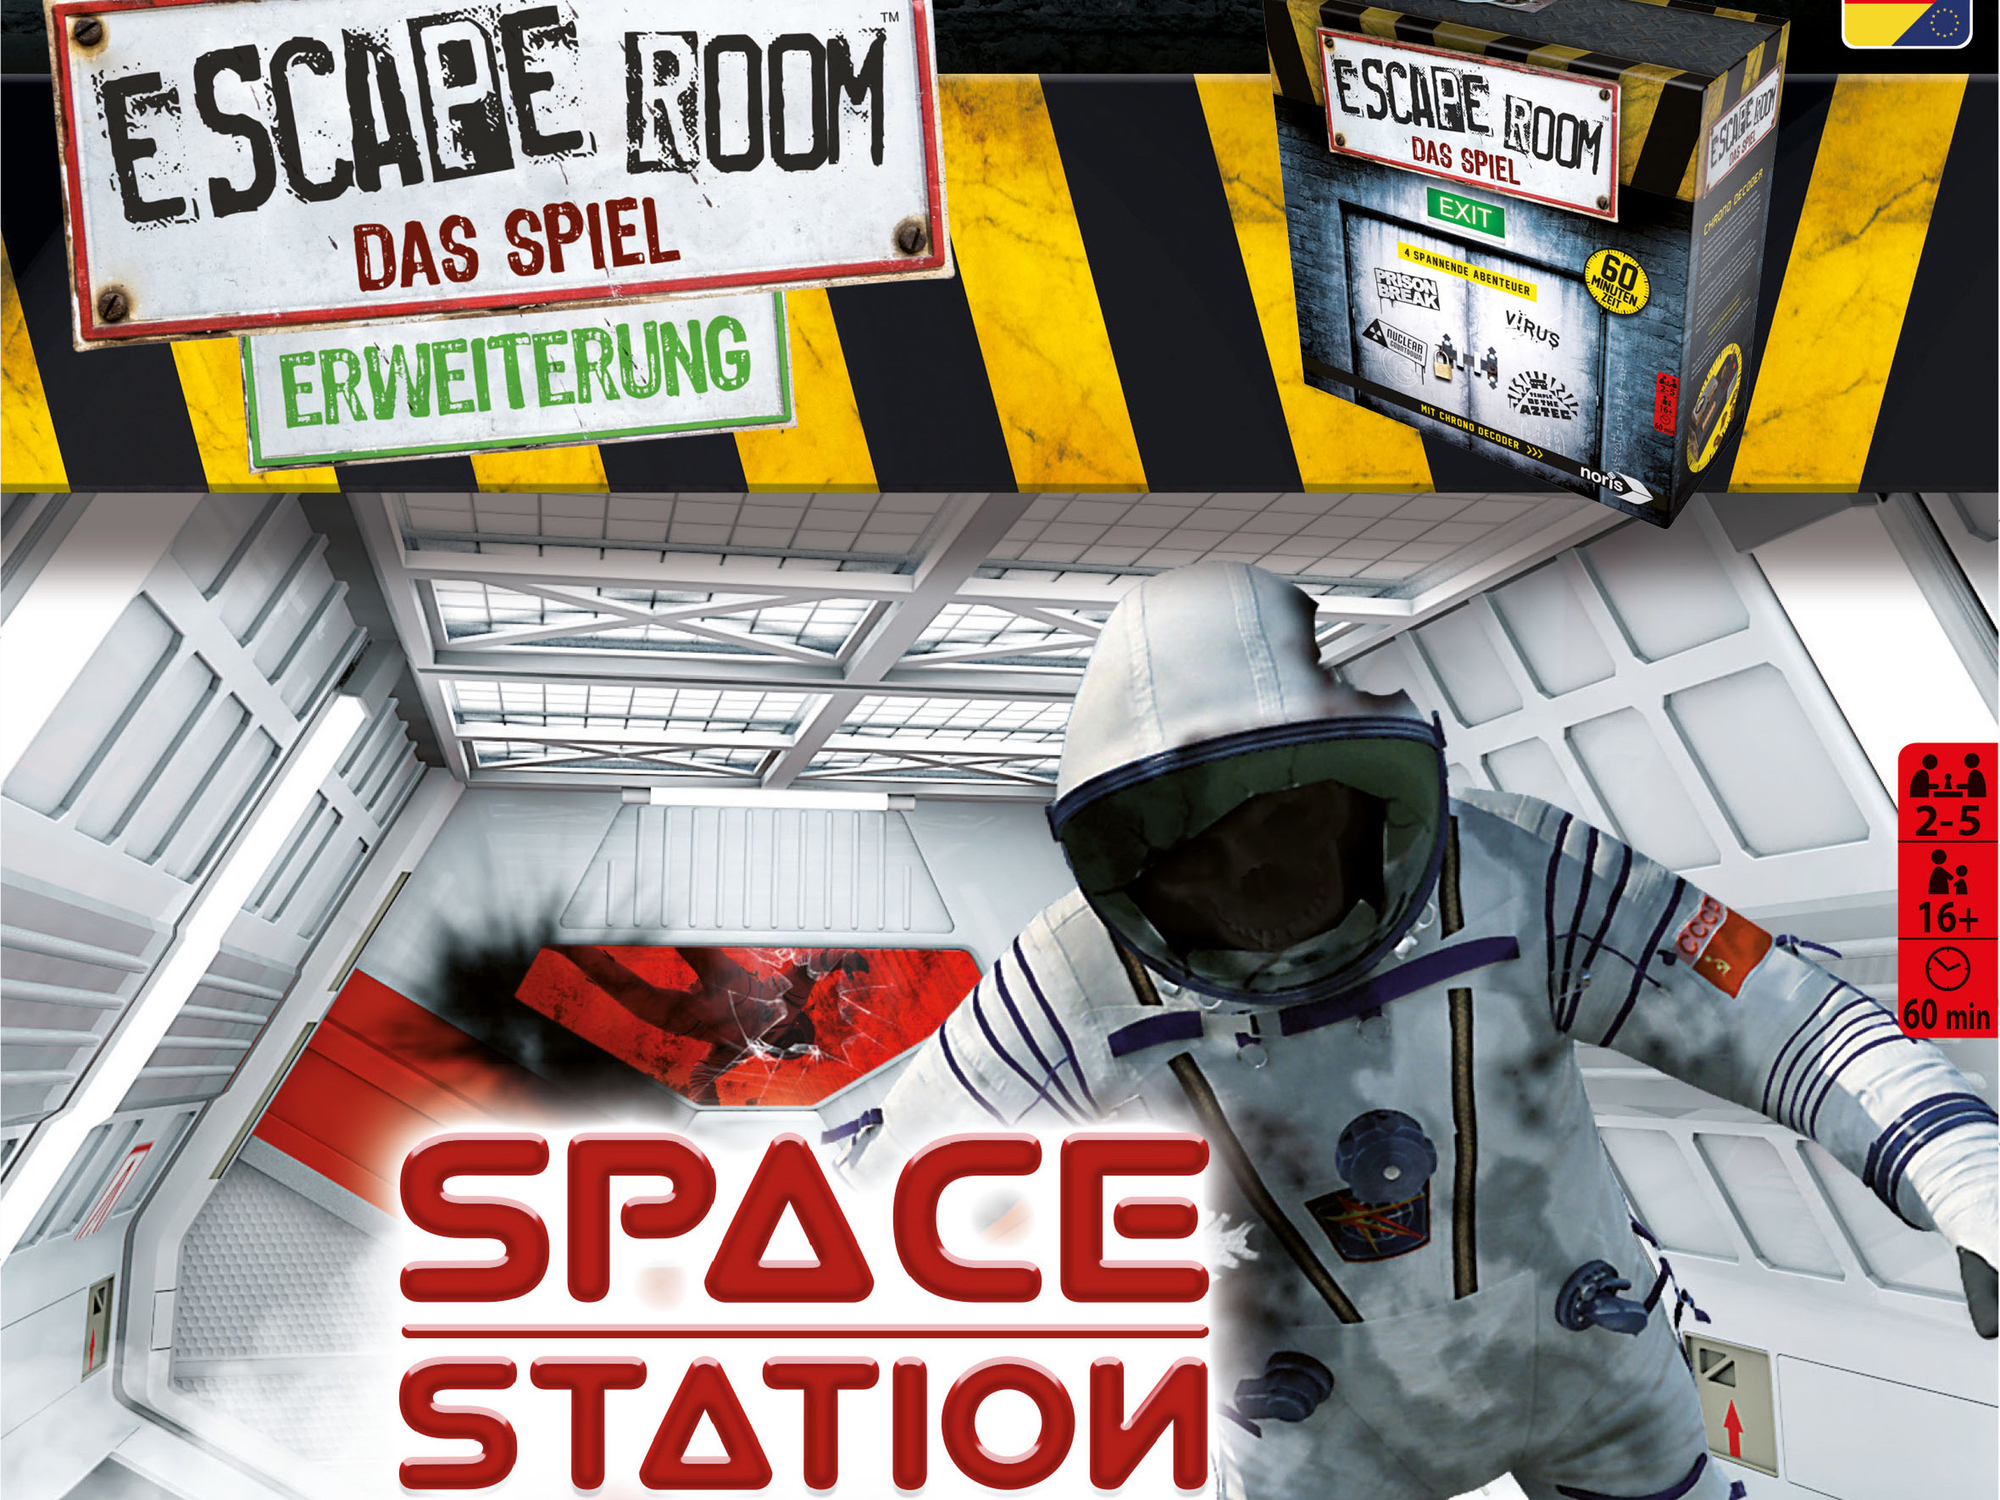 Escape Room Das Spiel Space Station Spiel Anleitung Und